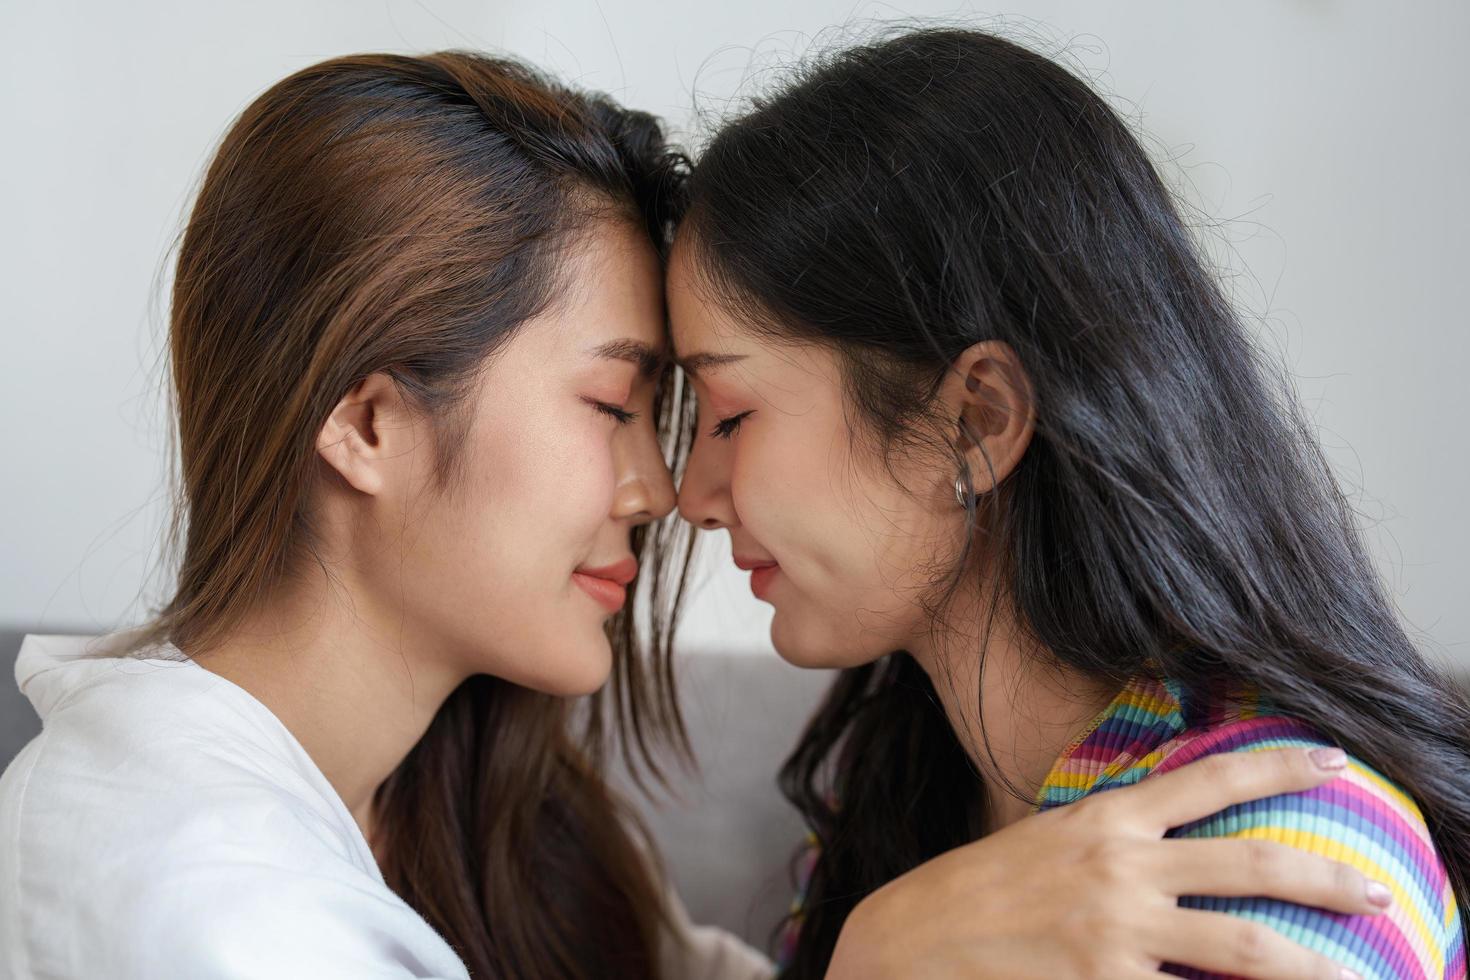 hbtq, hbt-koncept, homosexualitet, porträtt av två asiatiska kvinnor som poserar lyckliga tillsammans och visar kärlek till varandra medan de är tillsammans foto